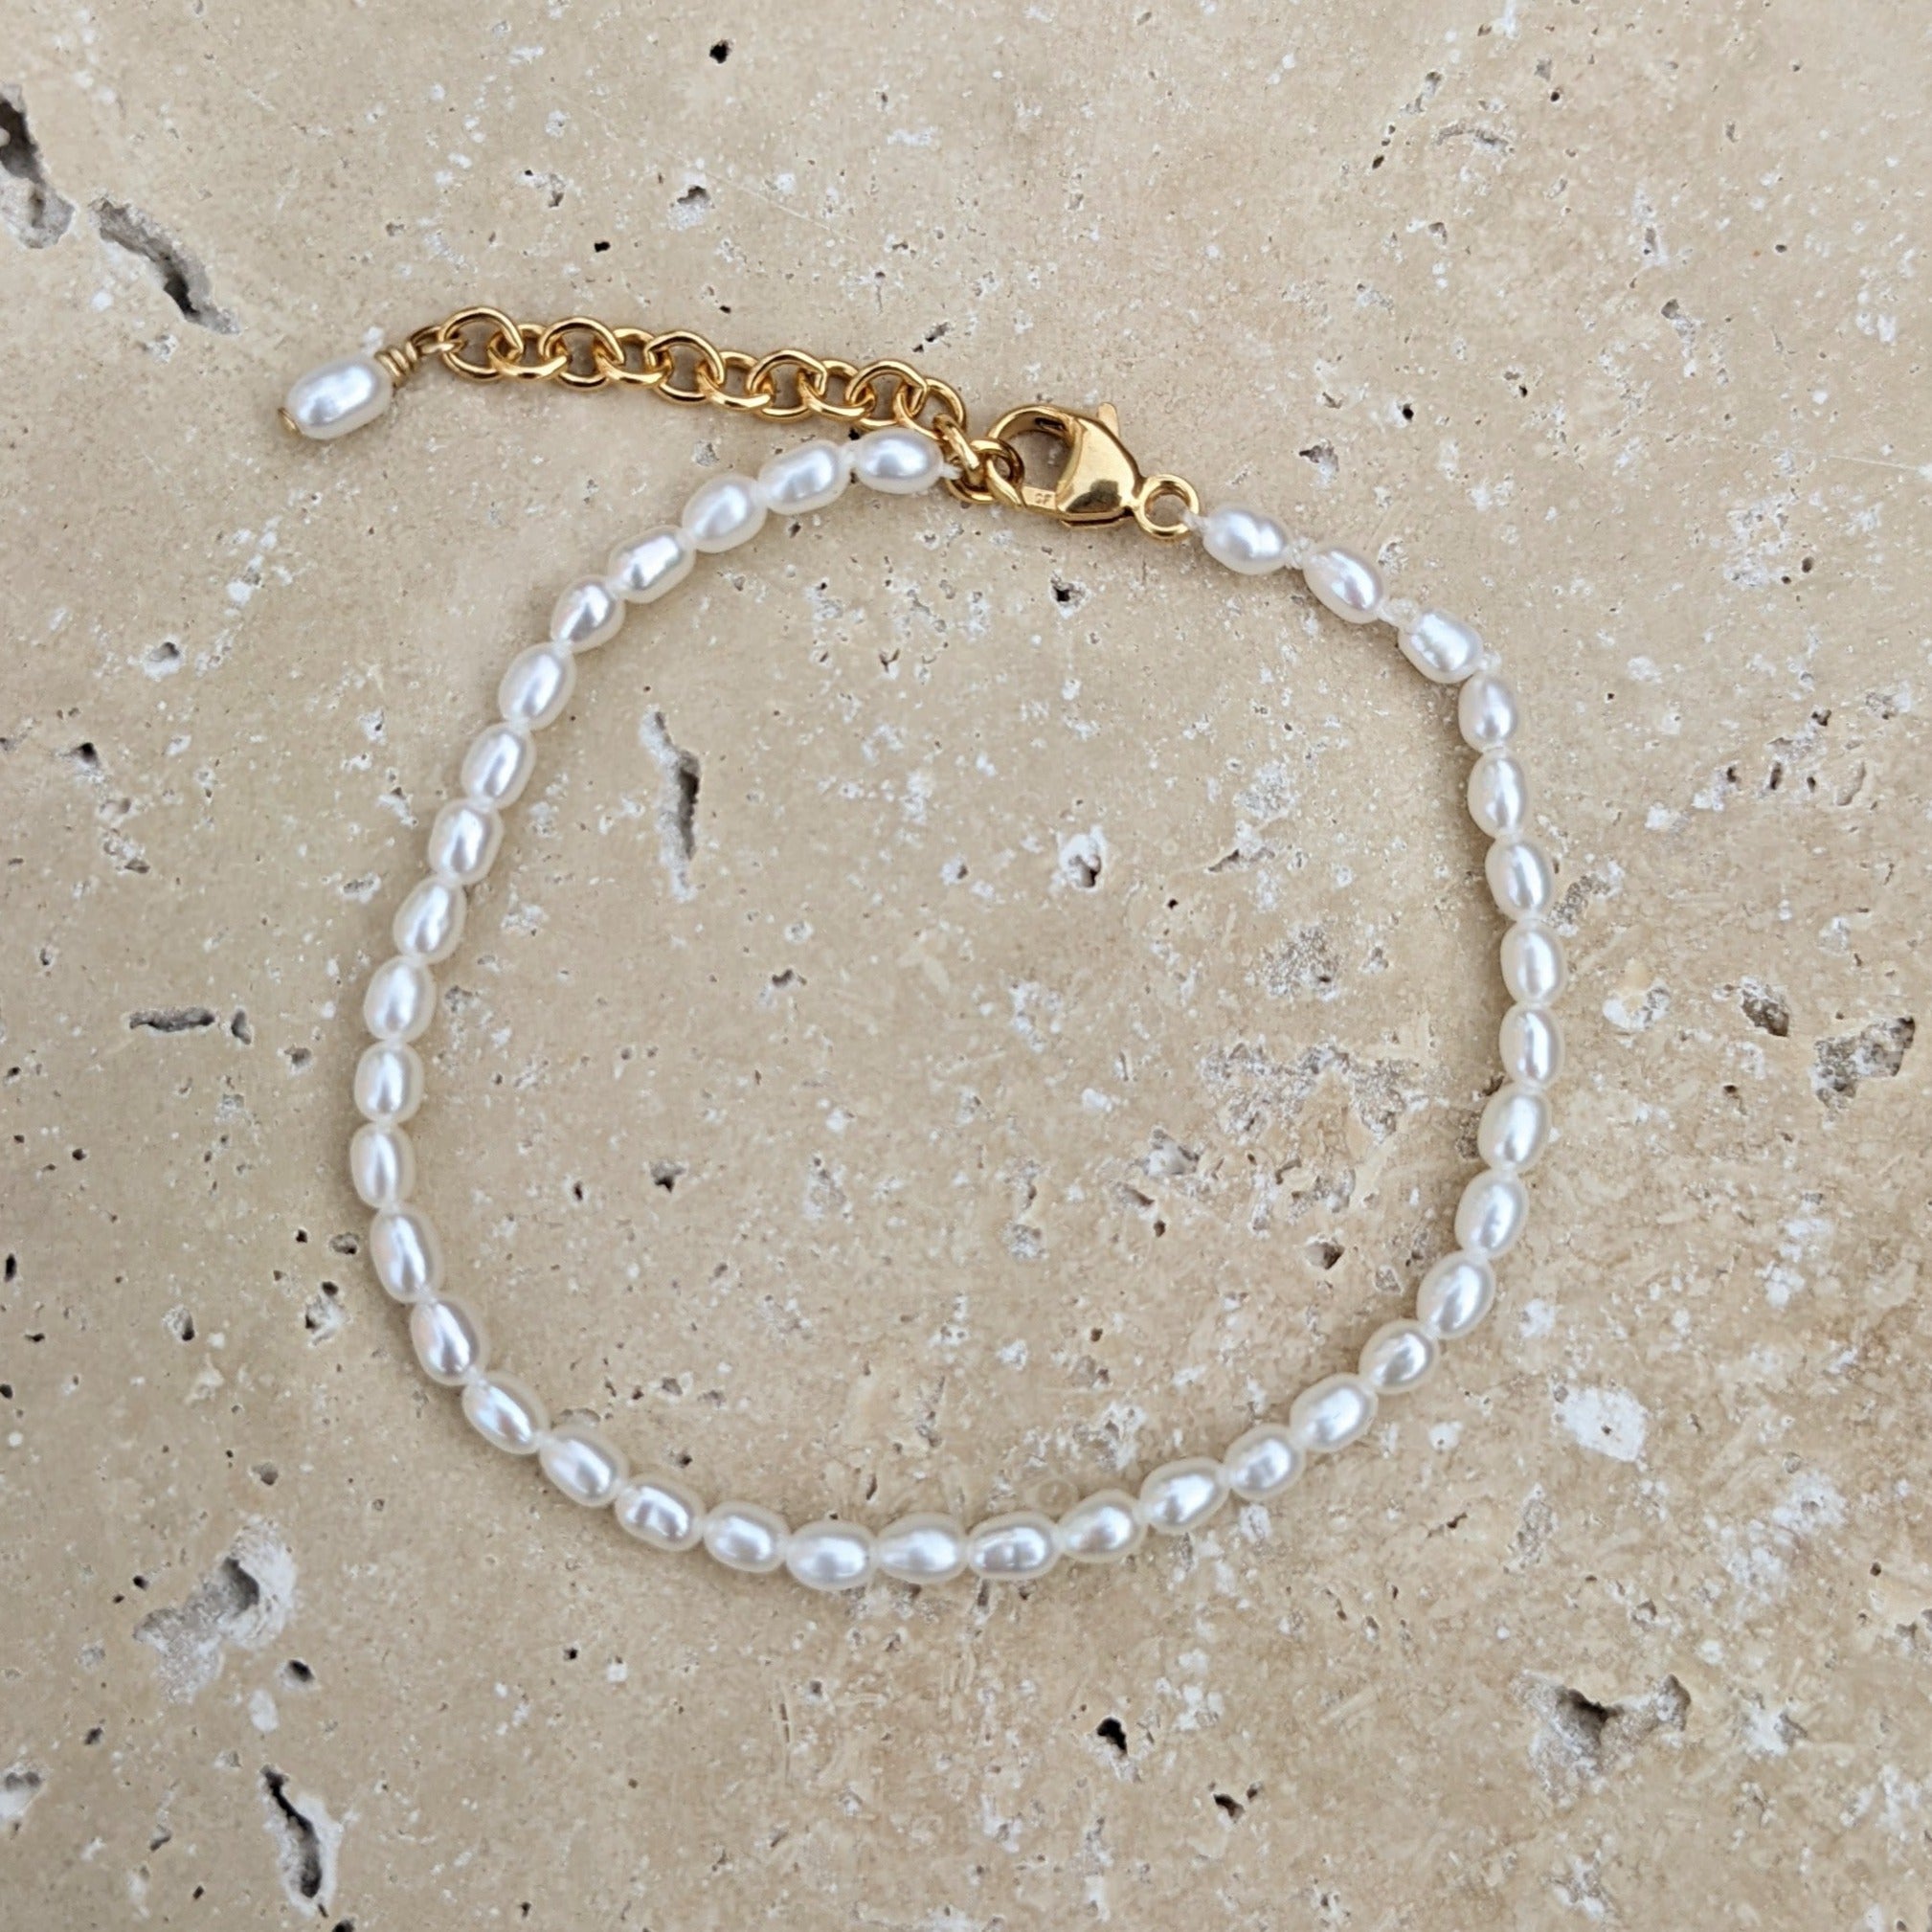 Gold filled adjustable seed pearl bracelet